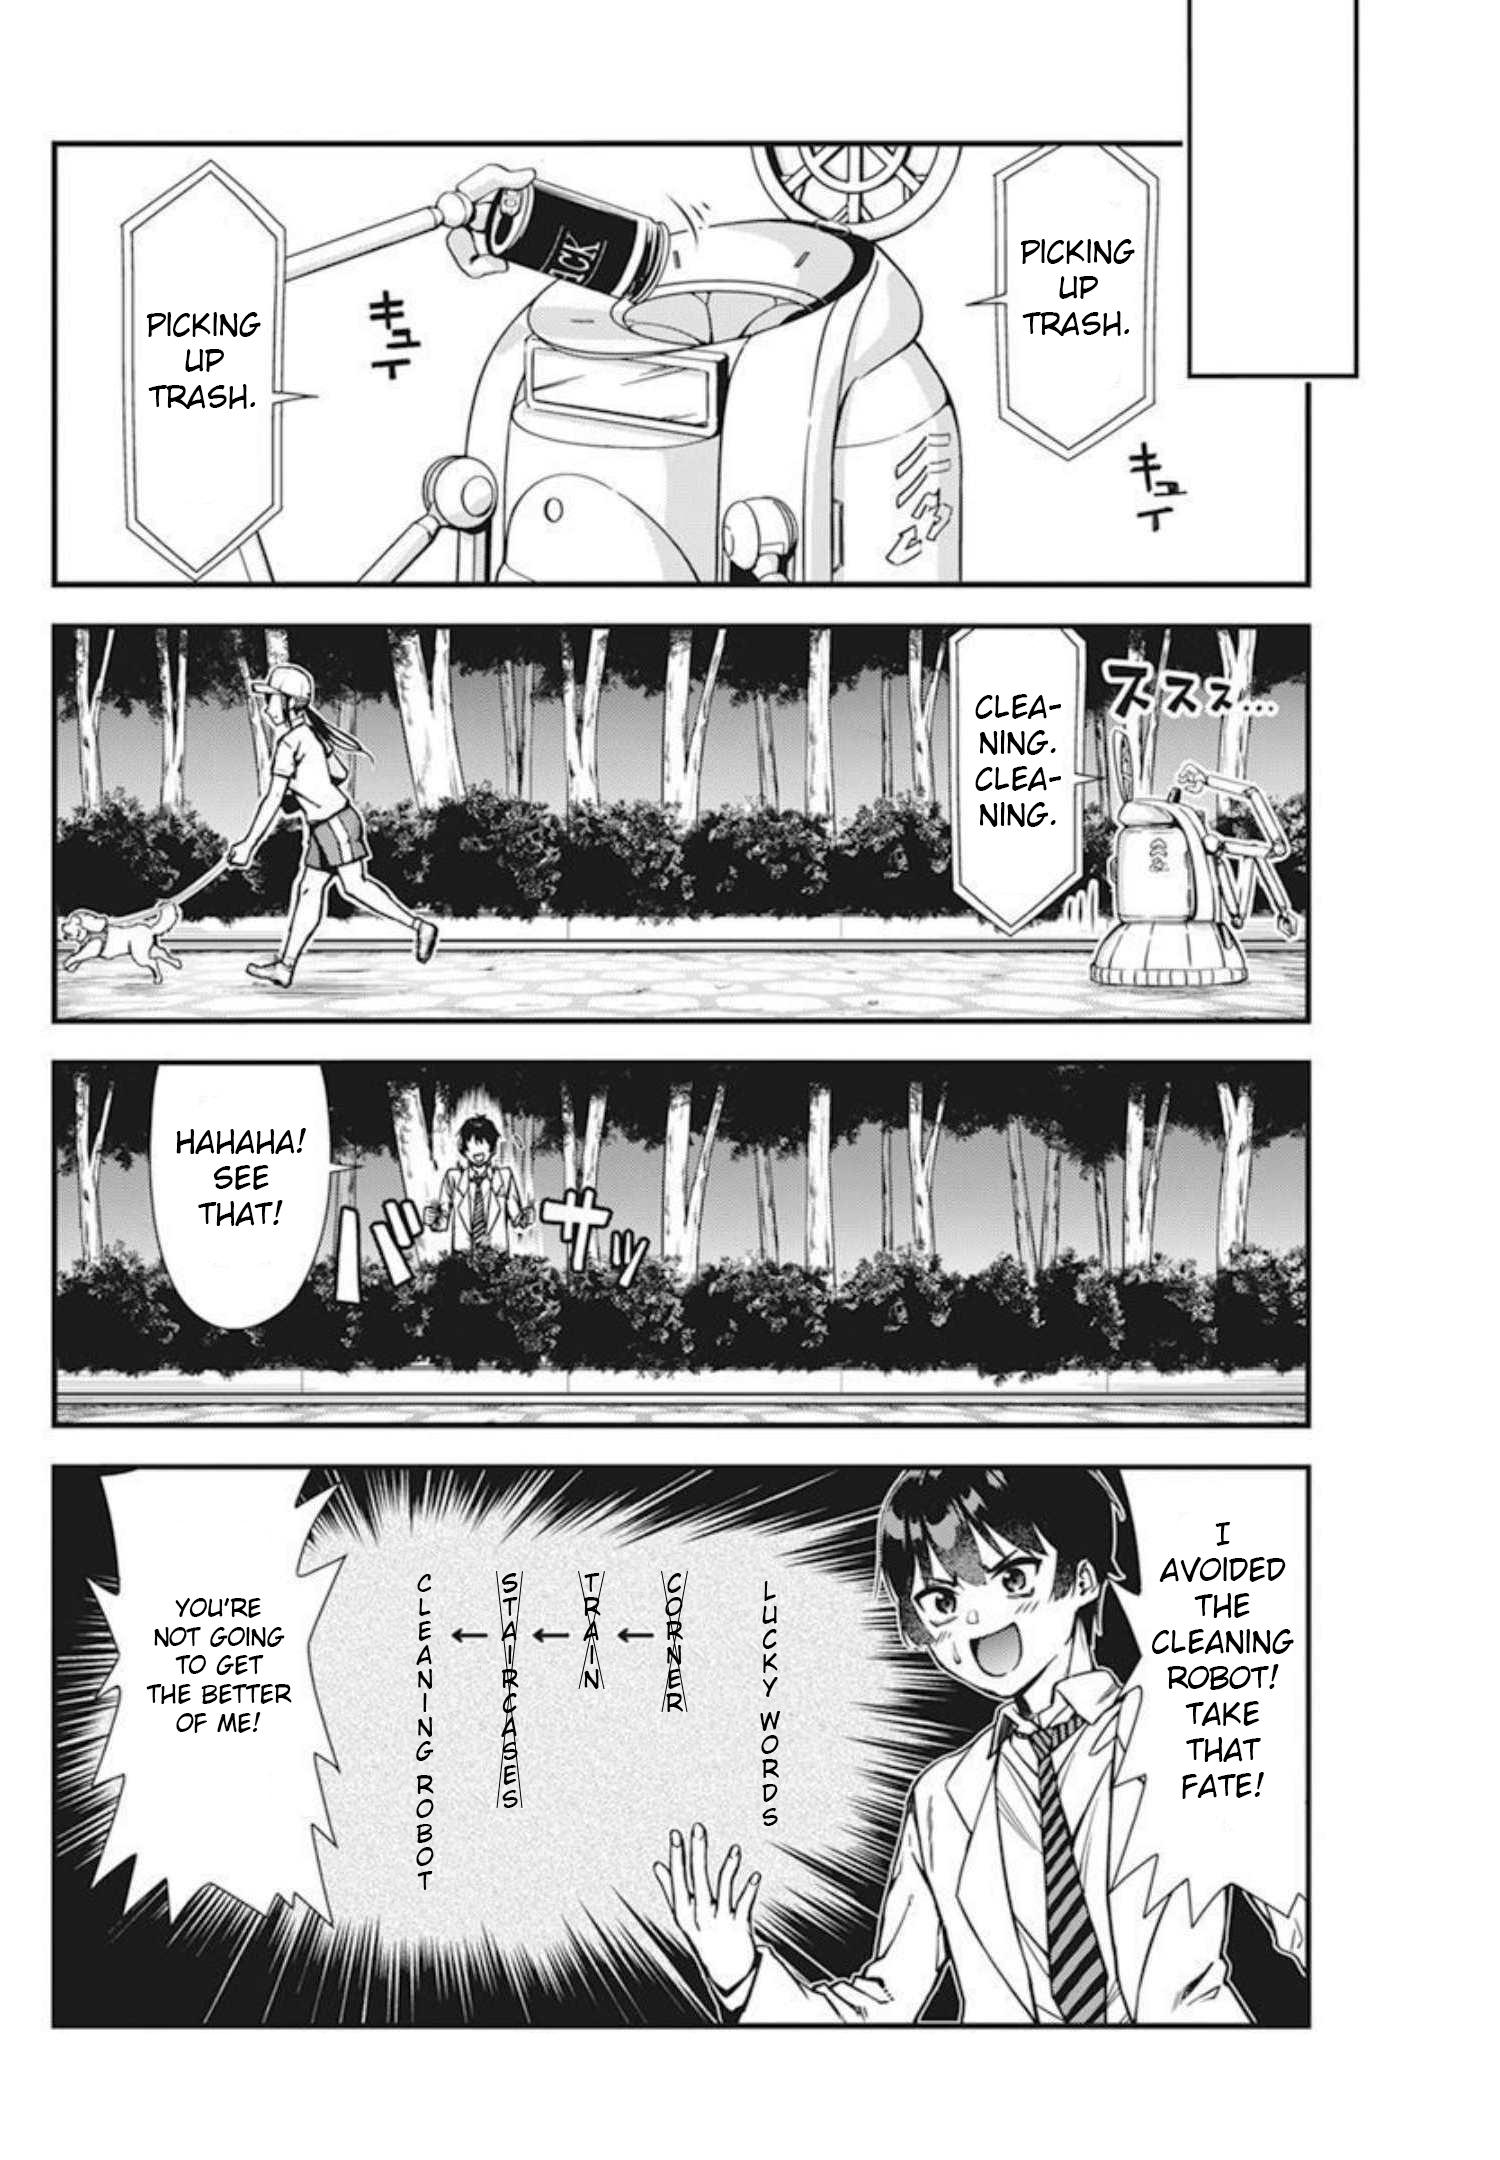 Renai Flops 2, Renai Flops 2 Page 1 - Read Free Manga Online at Ten Manga